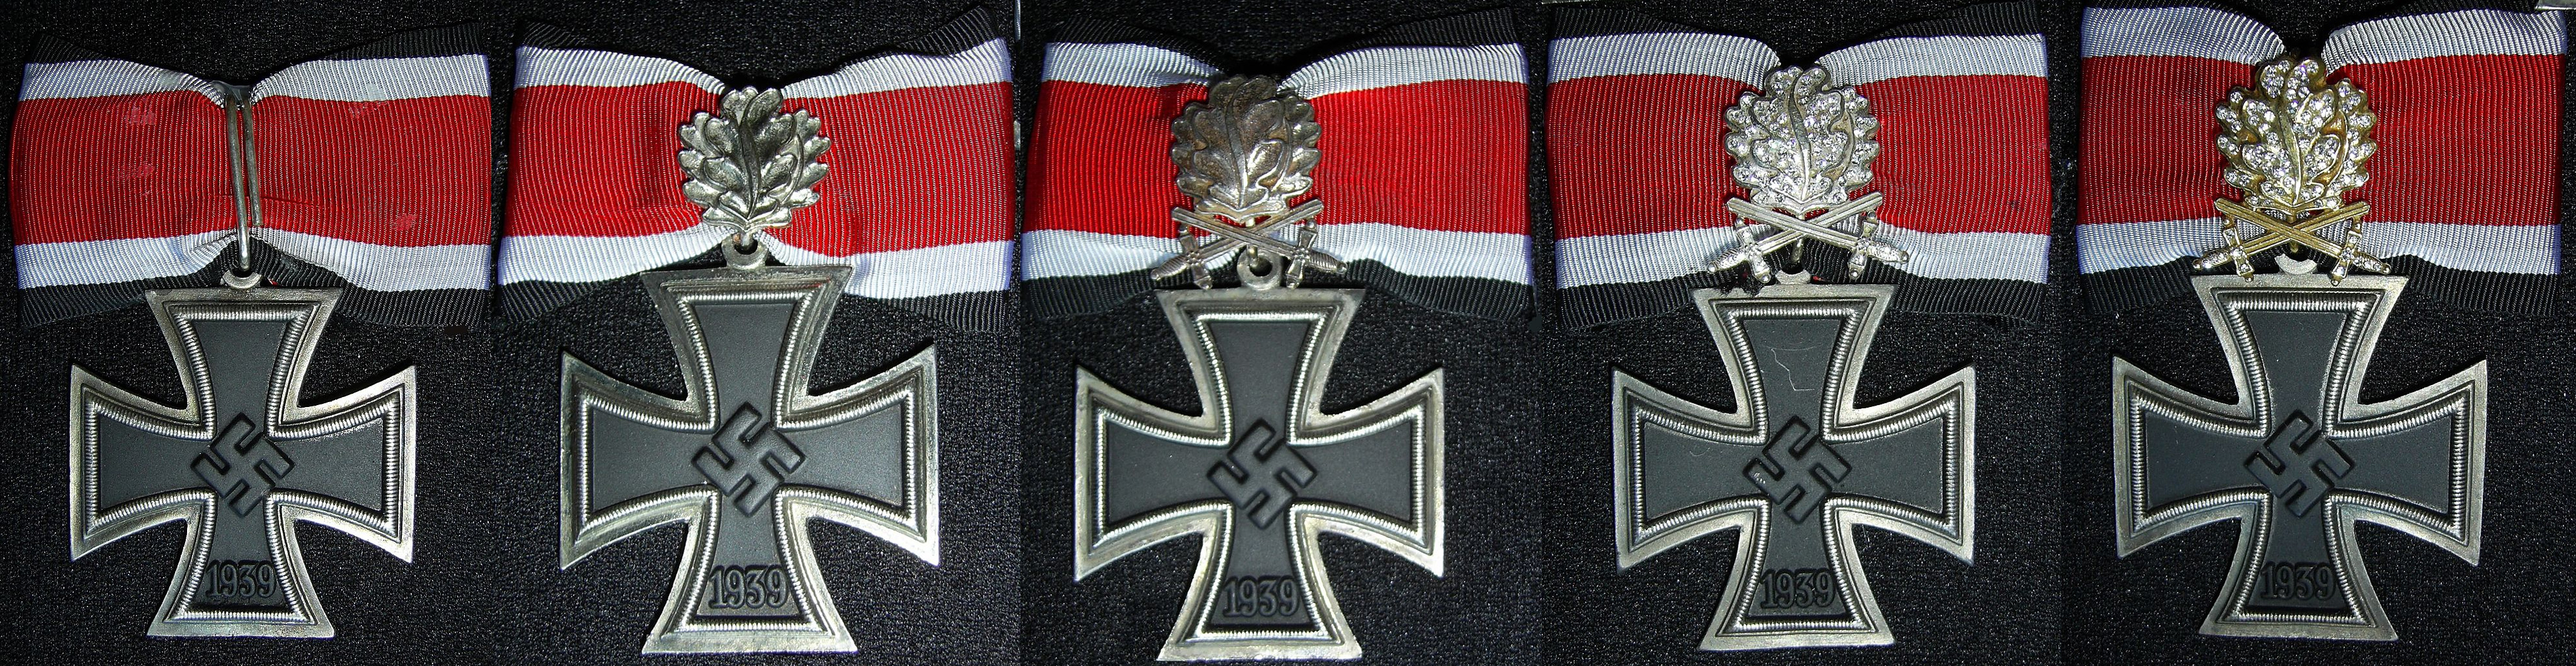 除了这些骑士十字勋章之外,还有加星铁十字勋章,二战中德国虽然设立